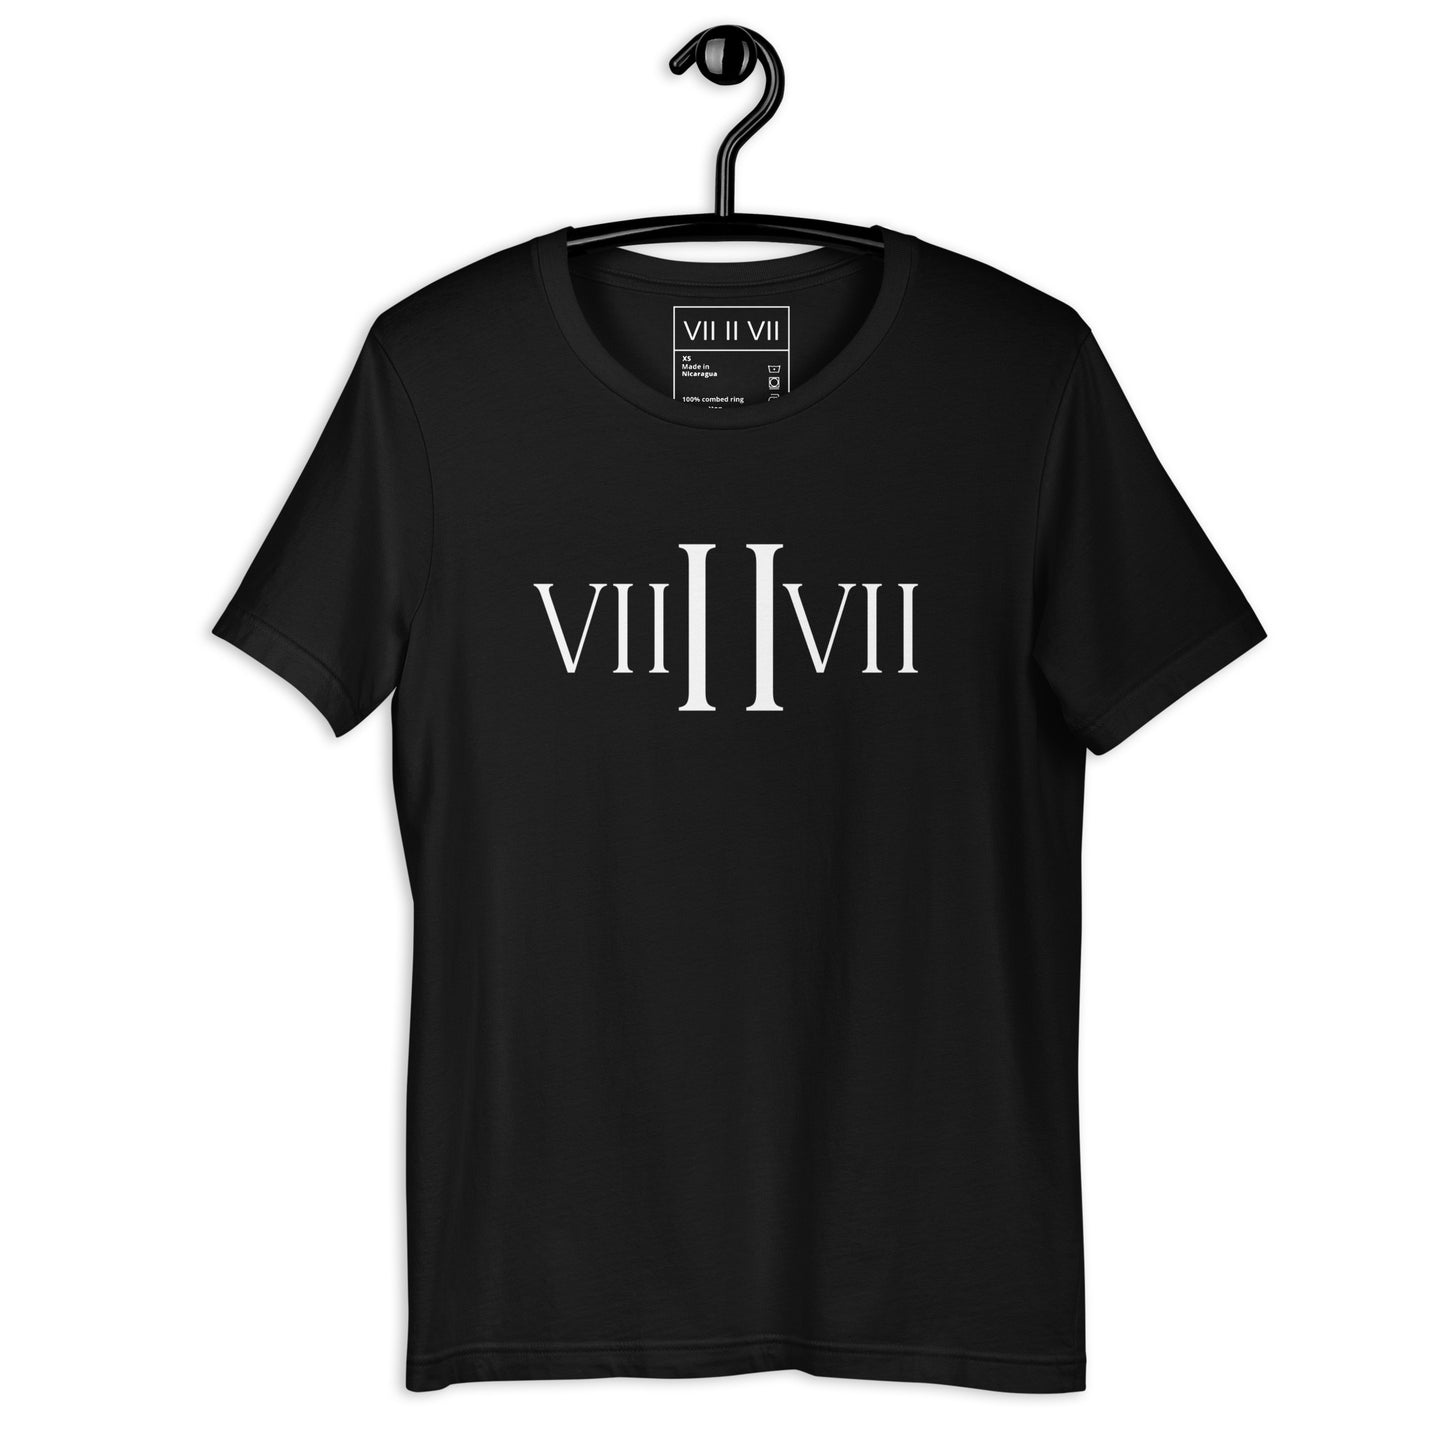 VII II VII- Tee (Black)